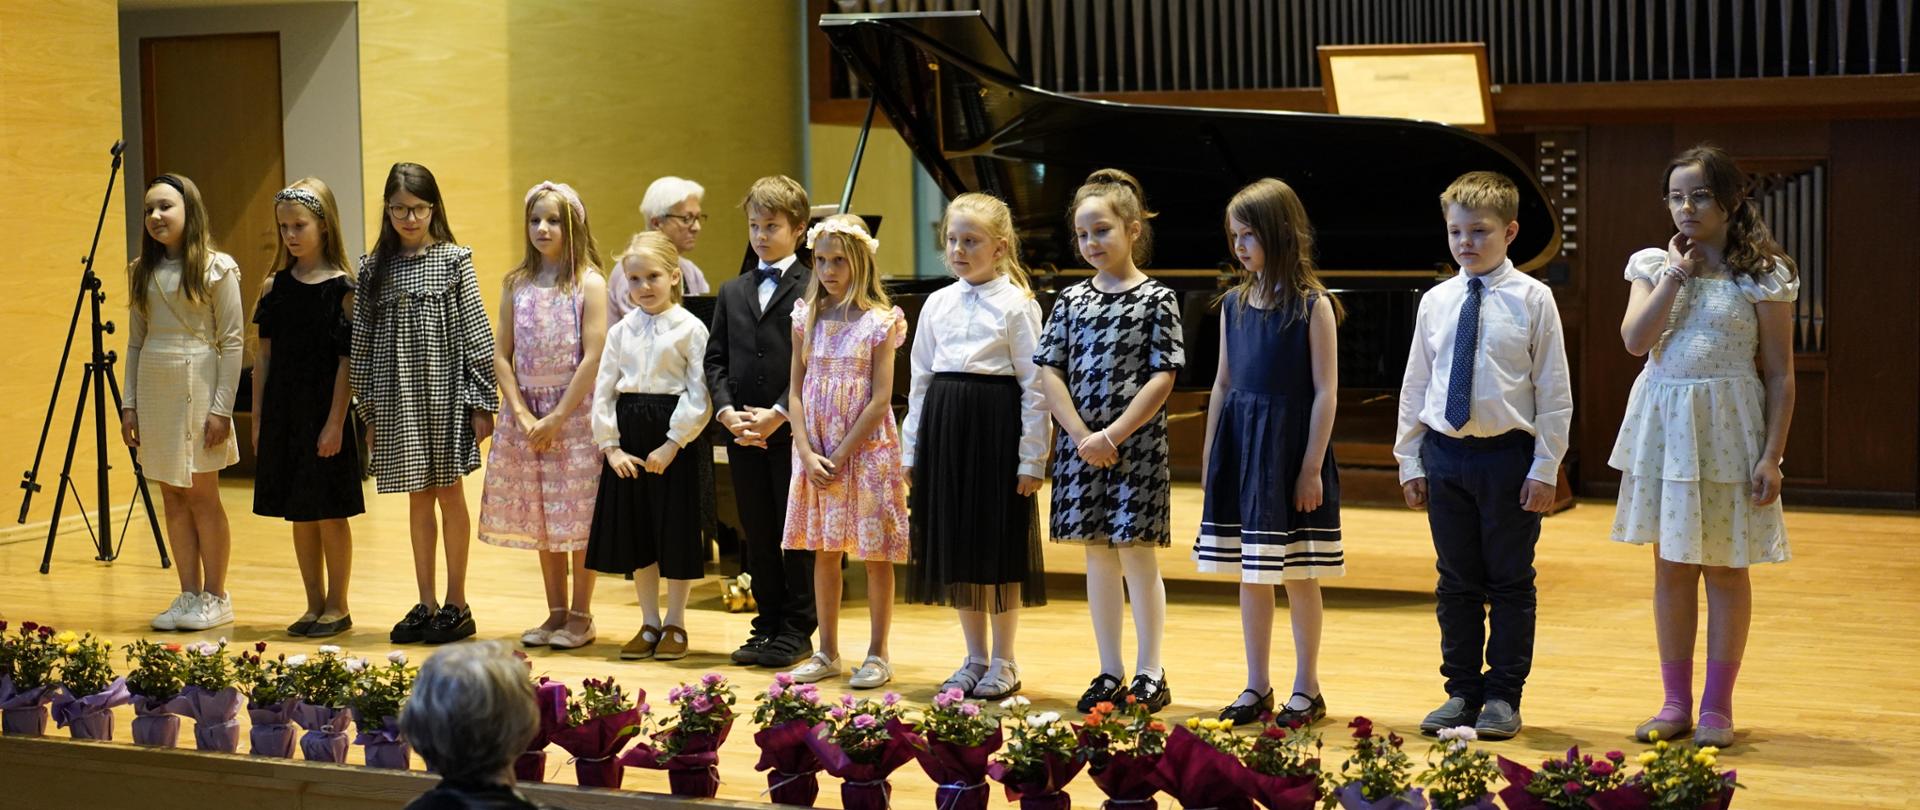 Dzieci, uczniowie klasy drugiej stoją na scenie w rzędzie. Przed dziećmi rozłożone kwiaty w doniczkach. Przed sceną część widowni. W tle za dziećmi czarny fortepian oraz organy.